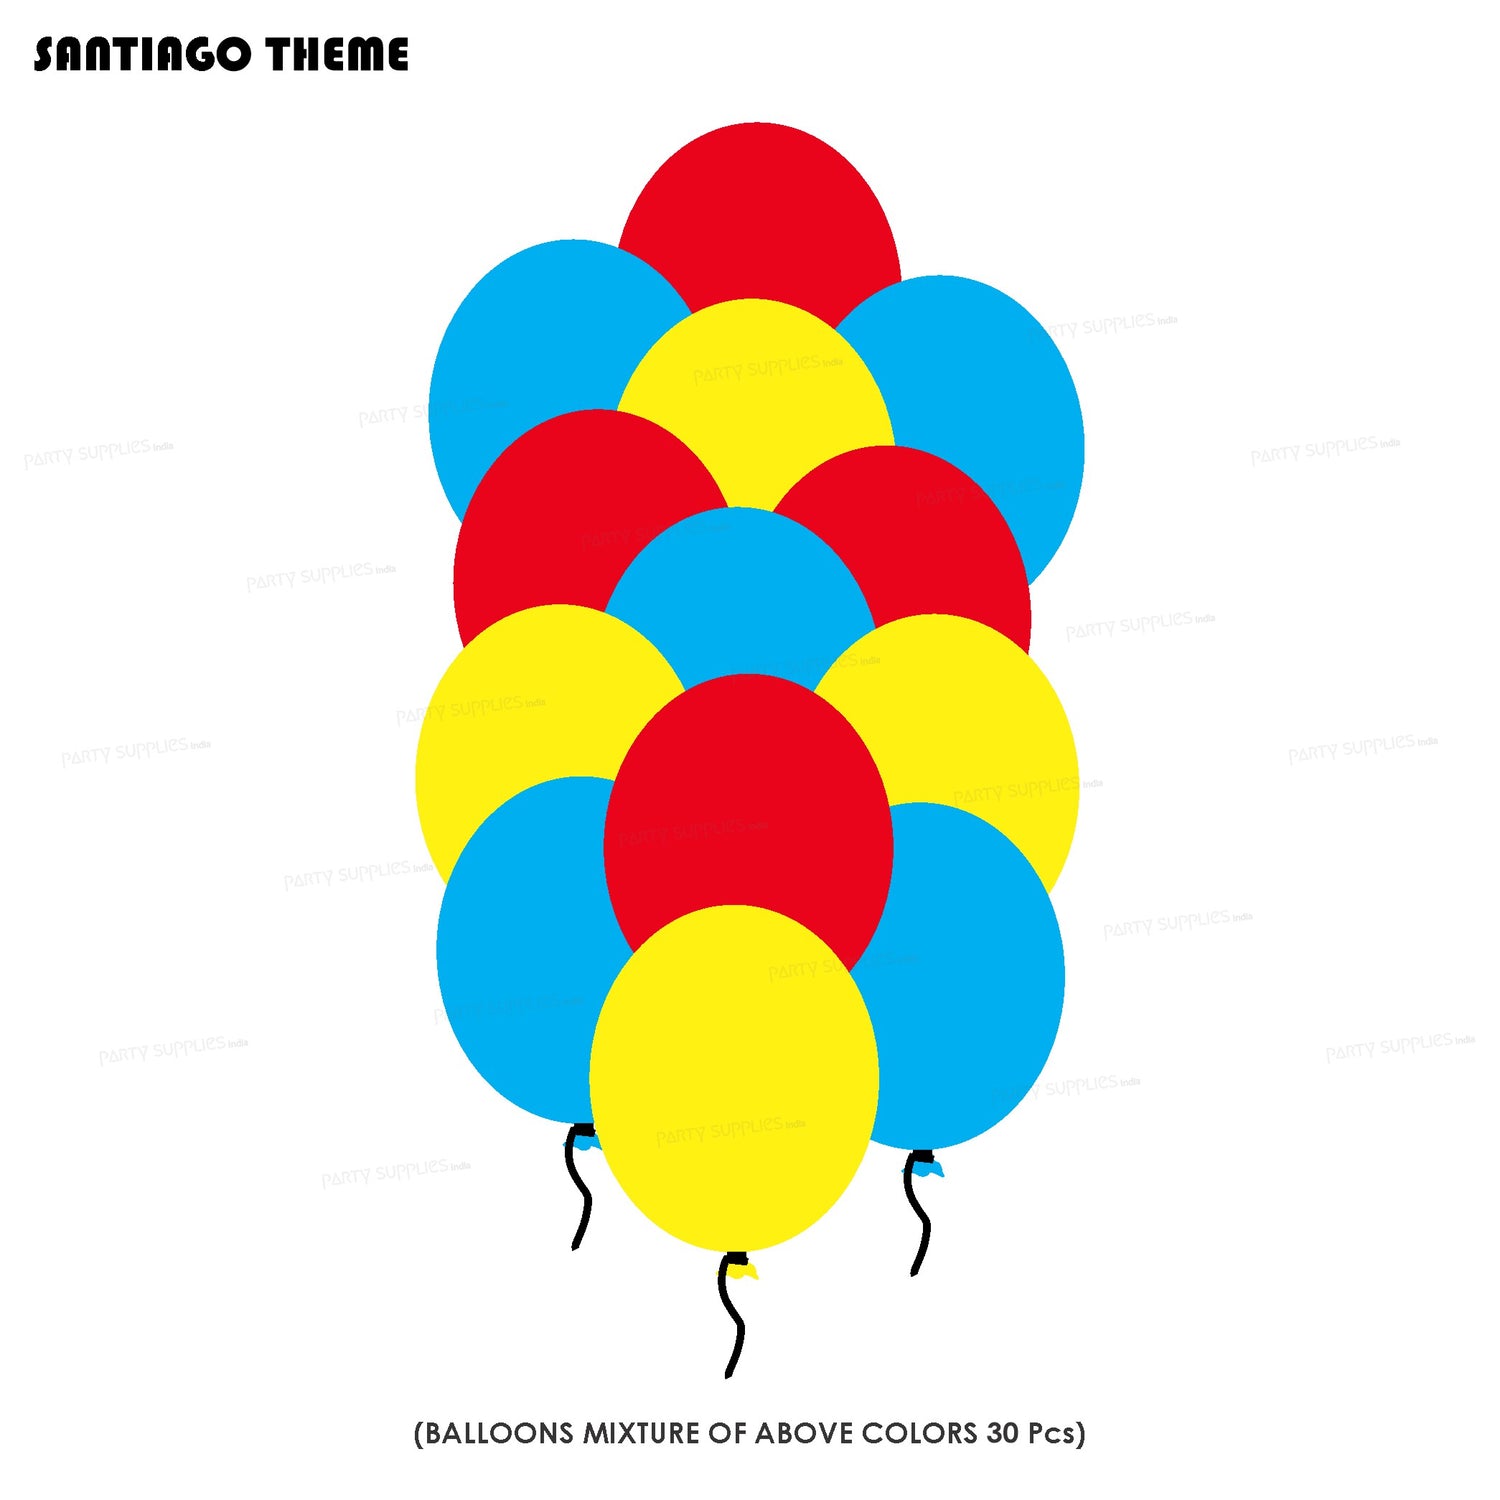 PSI Santiago Theme Colour 30 Pcs Balloons